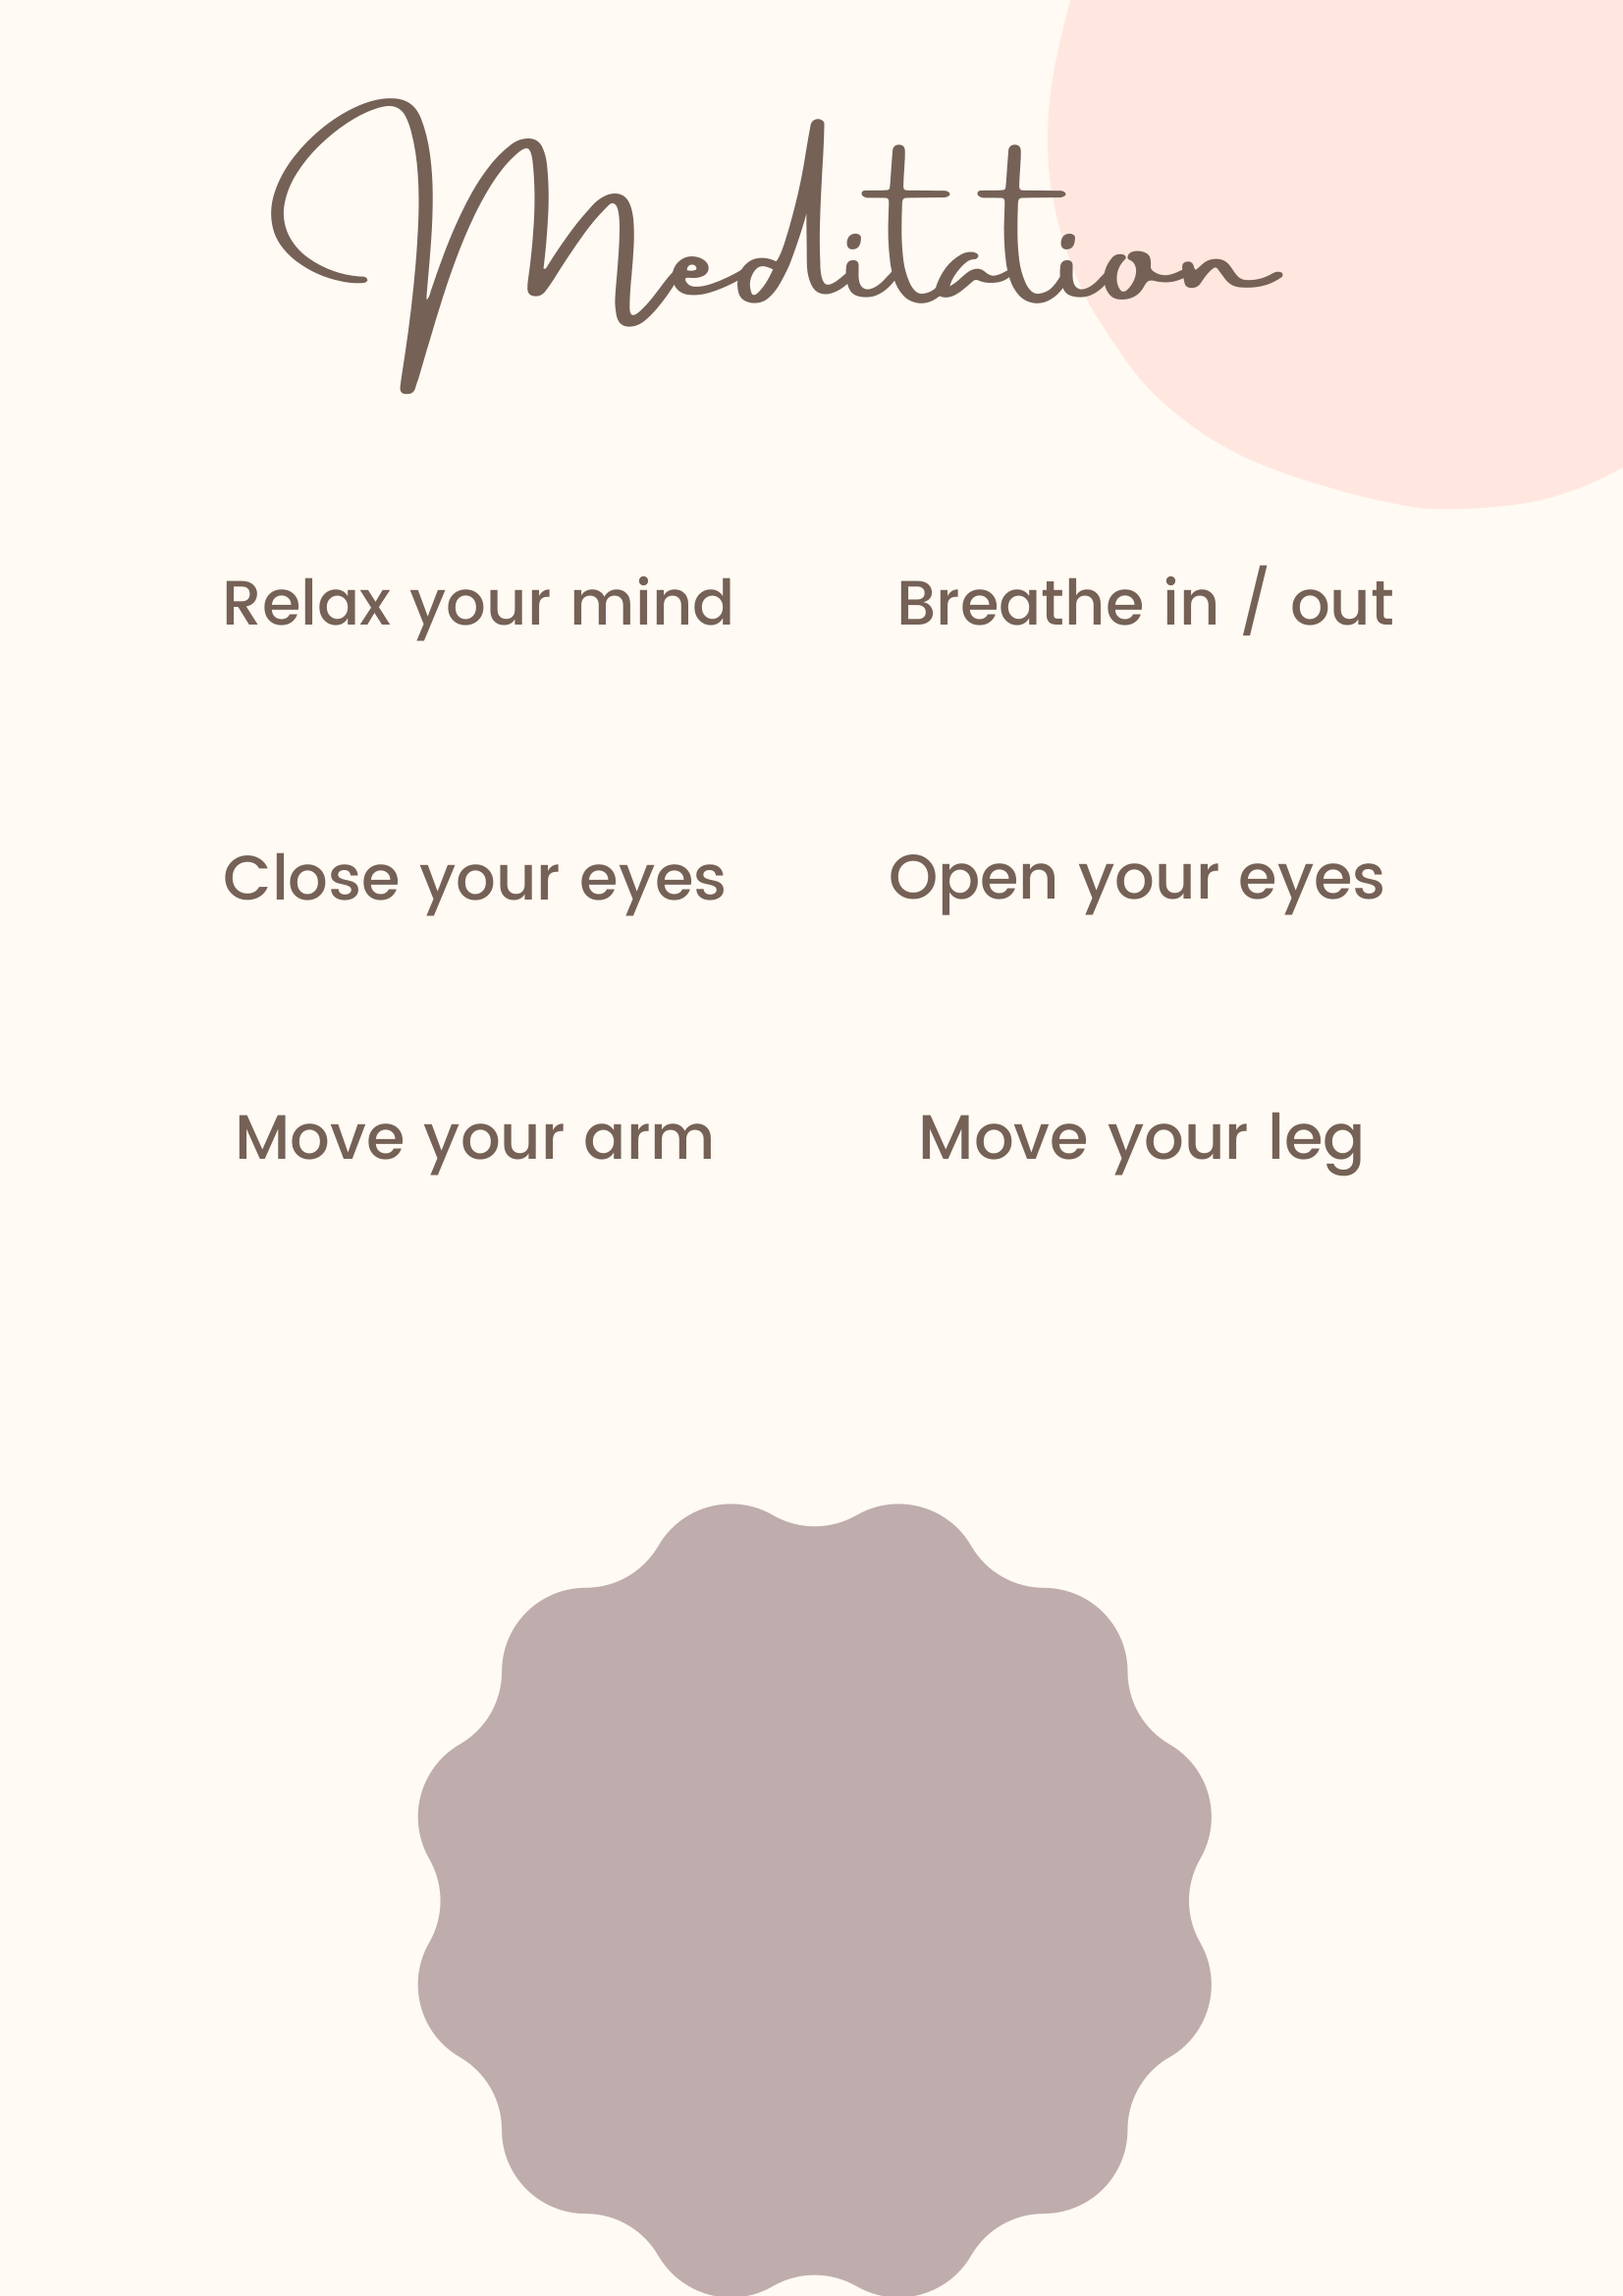 La imagen muestra los pasos a realizar para meditar